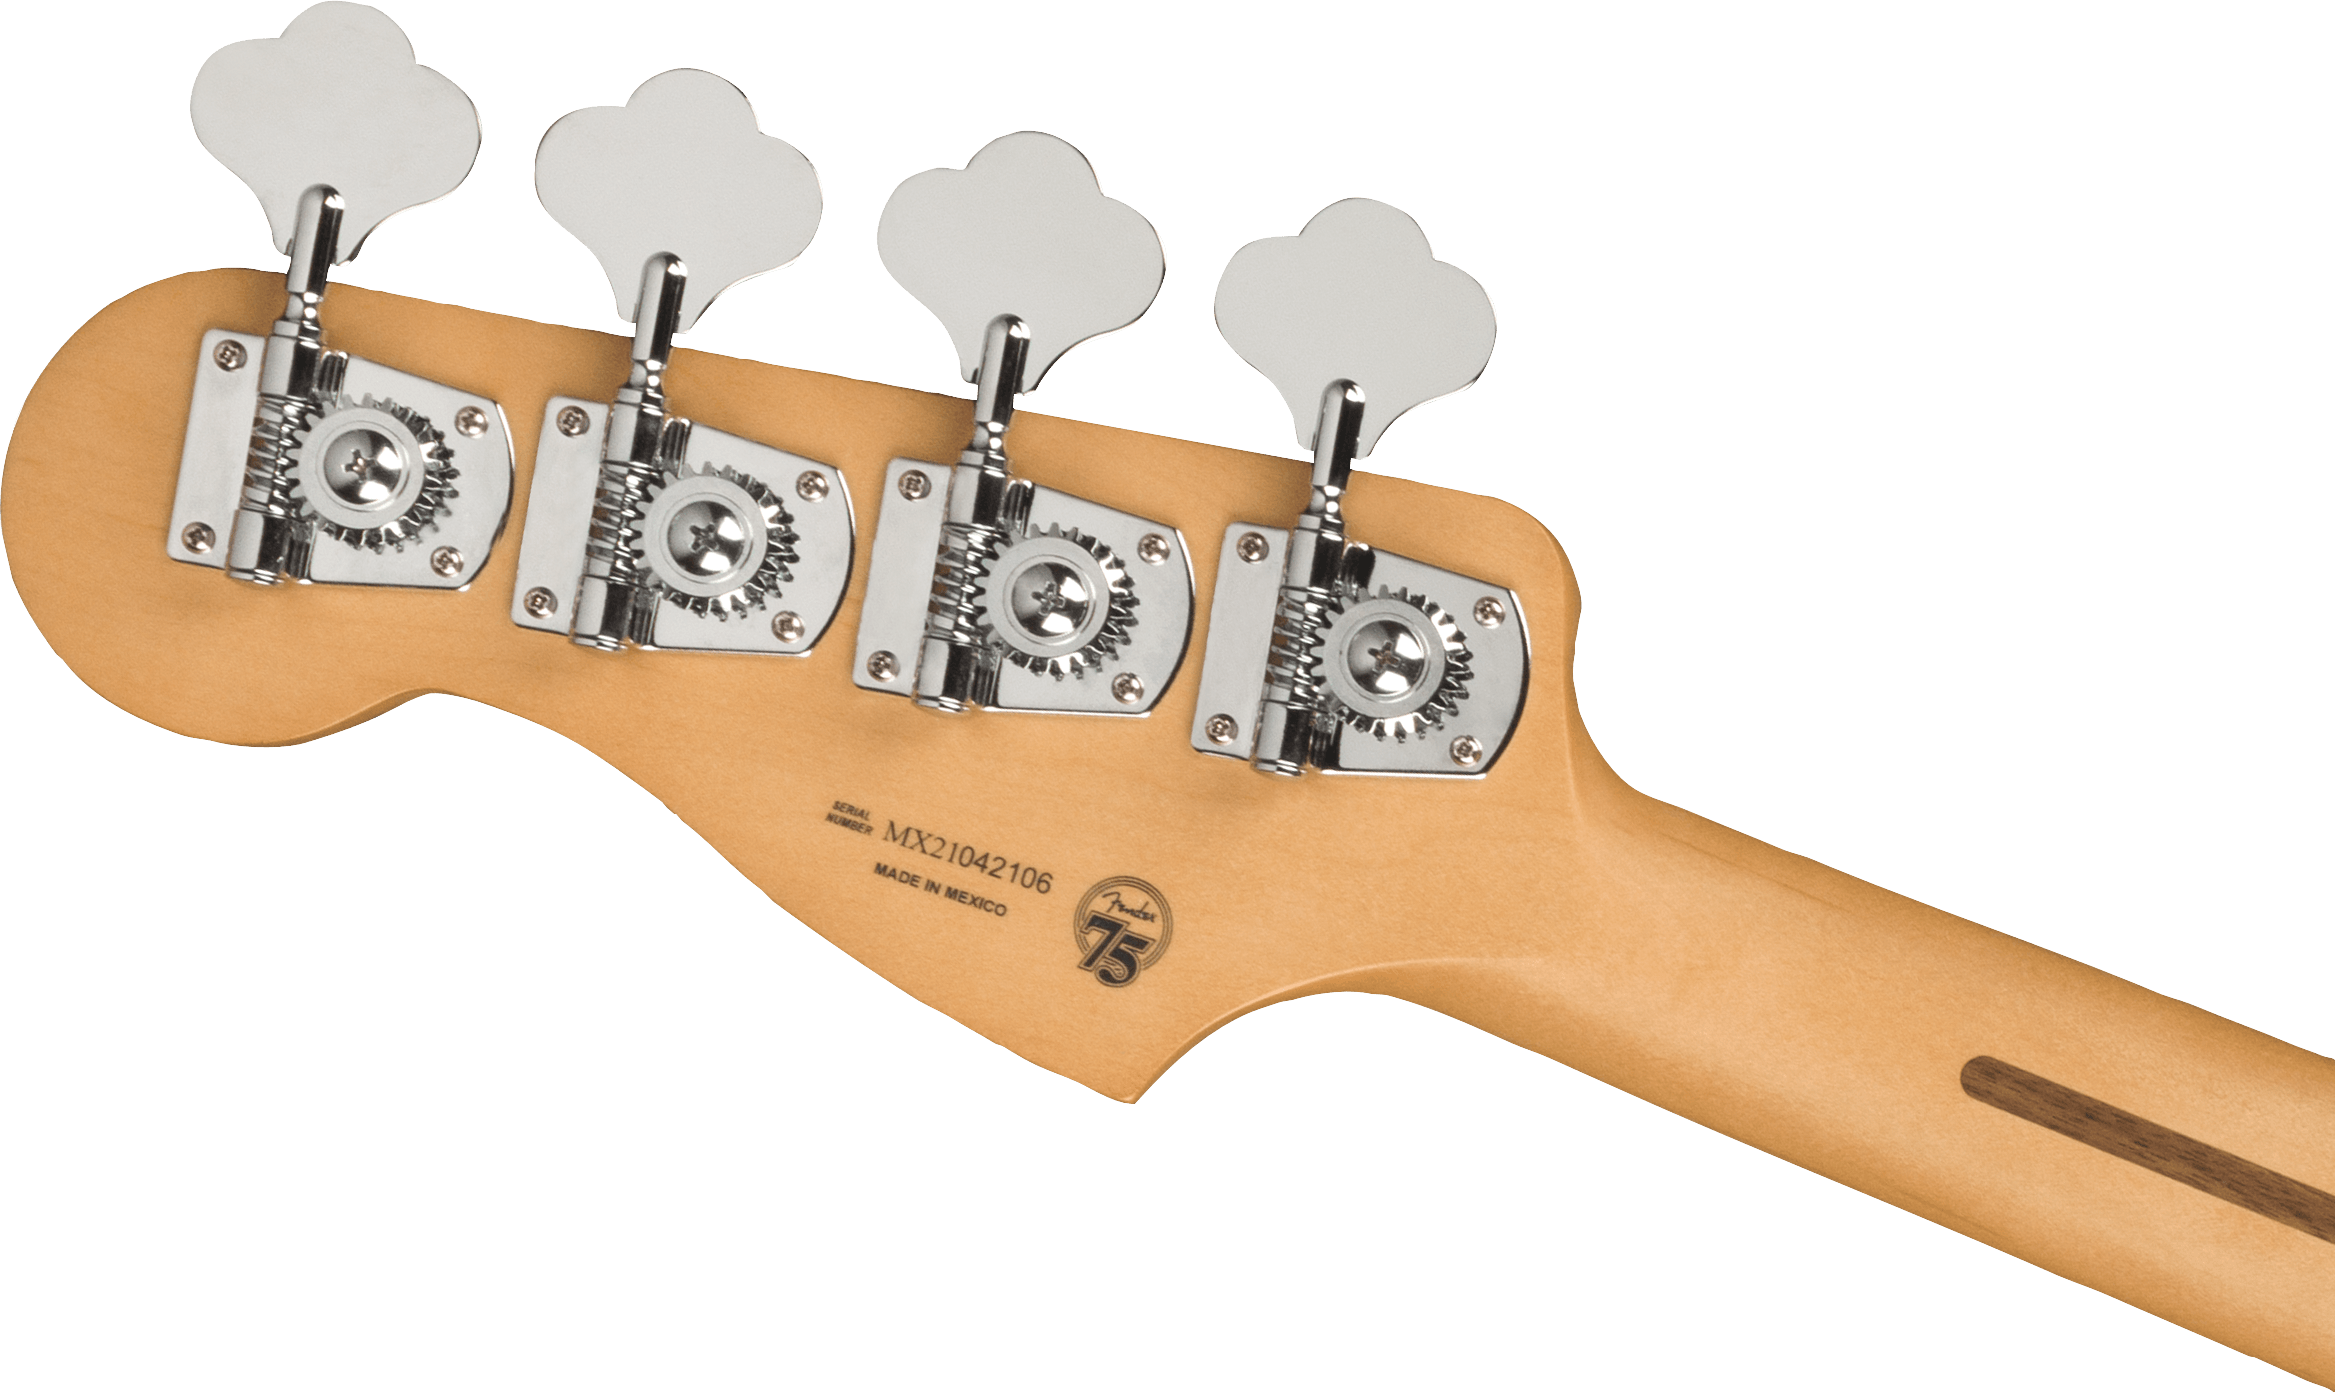 Fender Precision Bass Player Plus Lh Mex Gaucher Active Pf - 3-color Sunburst - Bajo eléctrico de cuerpo sólido - Variation 3